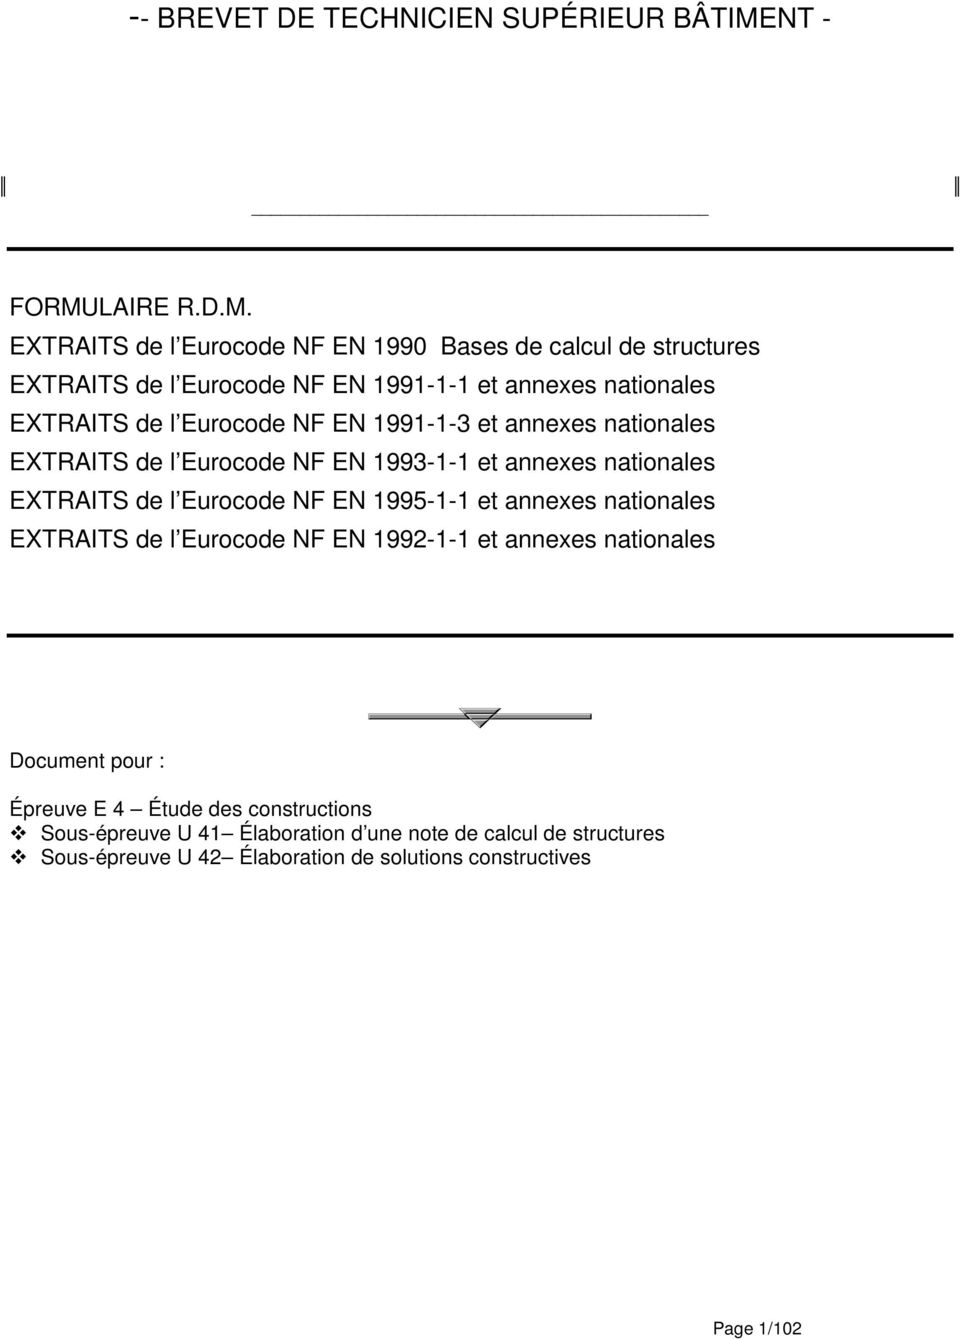 . EXTRITS de l Eurocode NF EN 99 Bases de calcul de structures EXTRITS de l Eurocode NF EN 99-- et annees natonales EXTRITS de l Eurocode NF